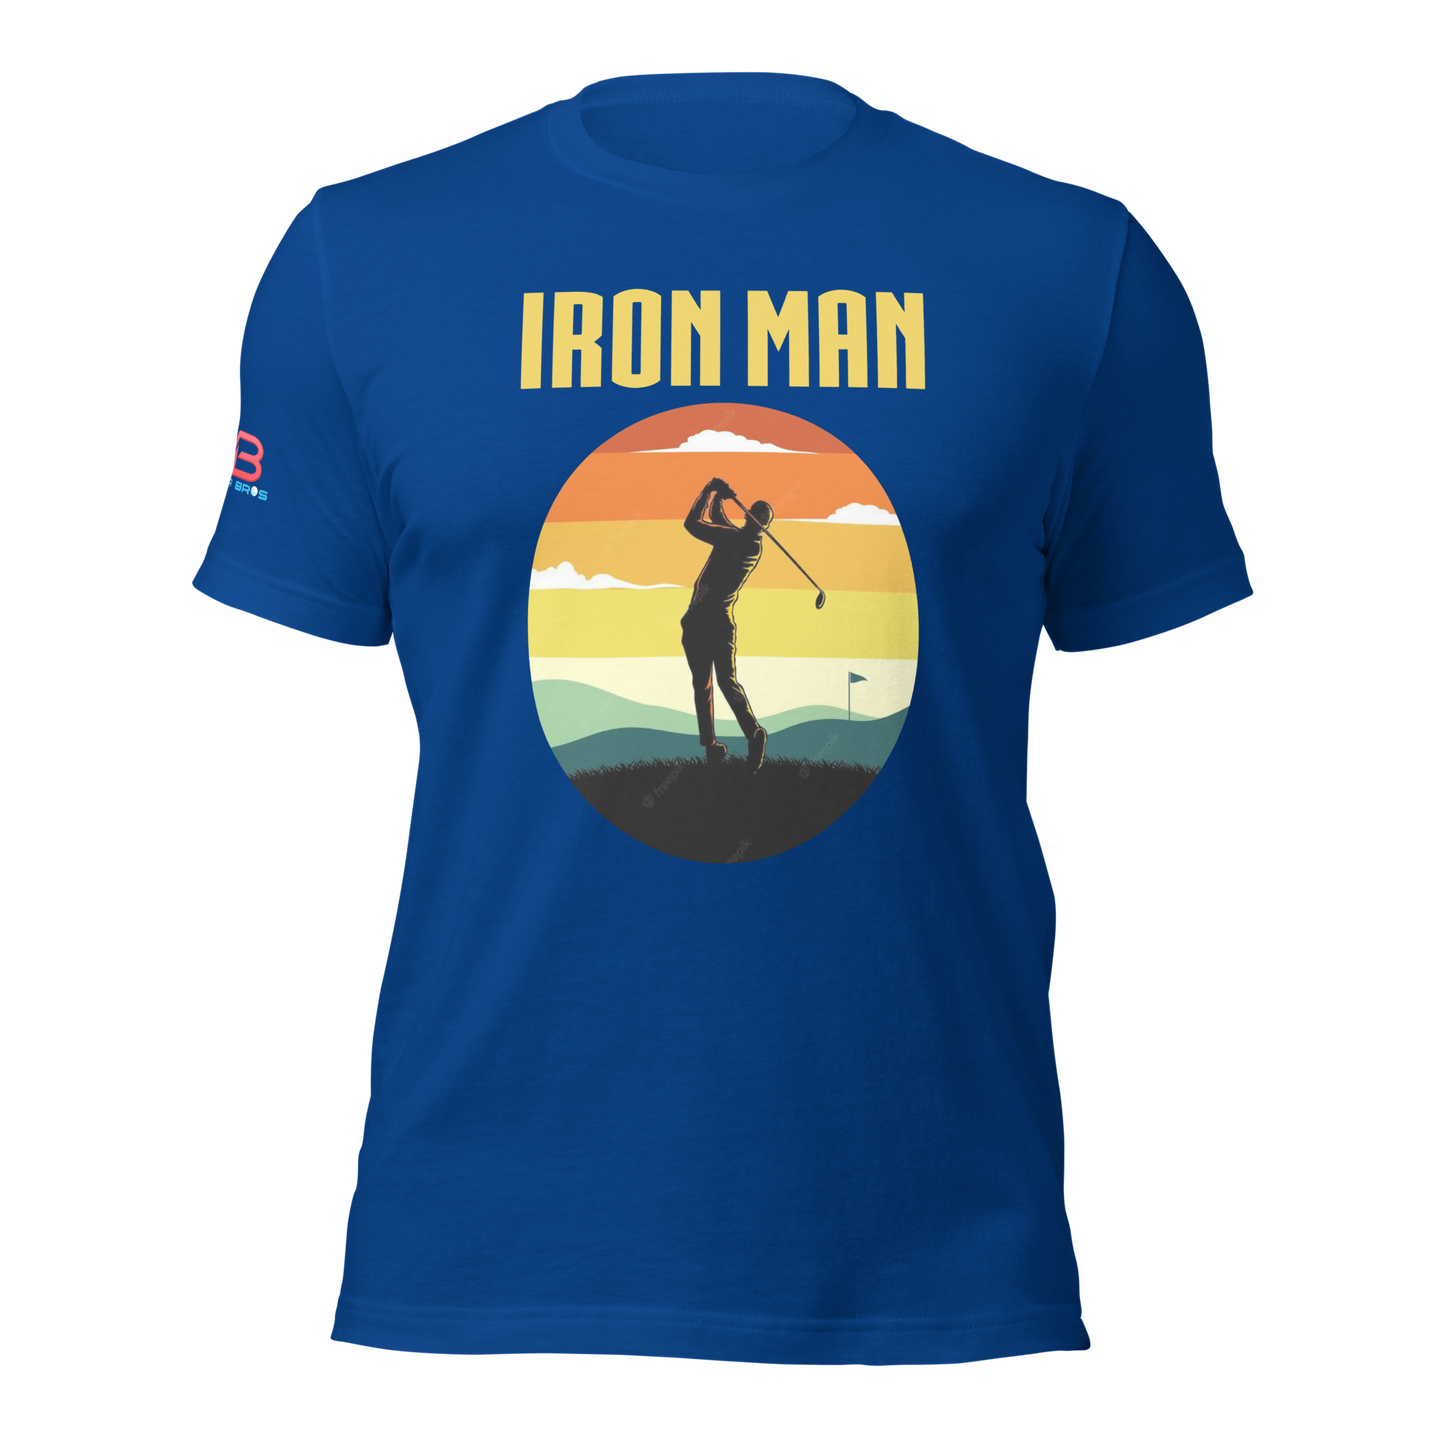 Iron Man Tee Shirt